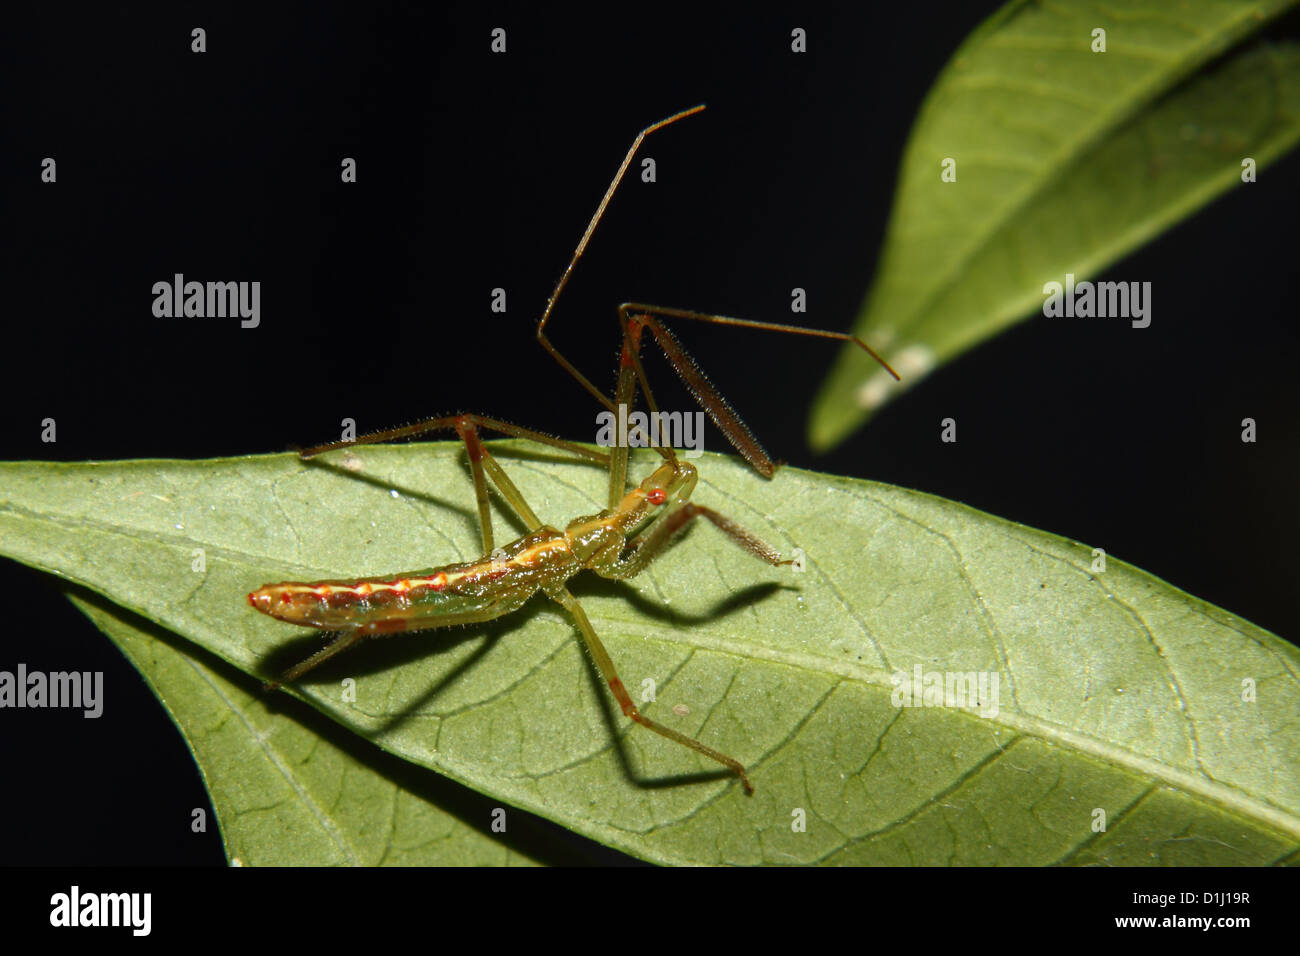 Une nymphe bug assassin vert rampe le long d'une feuille Banque D'Images